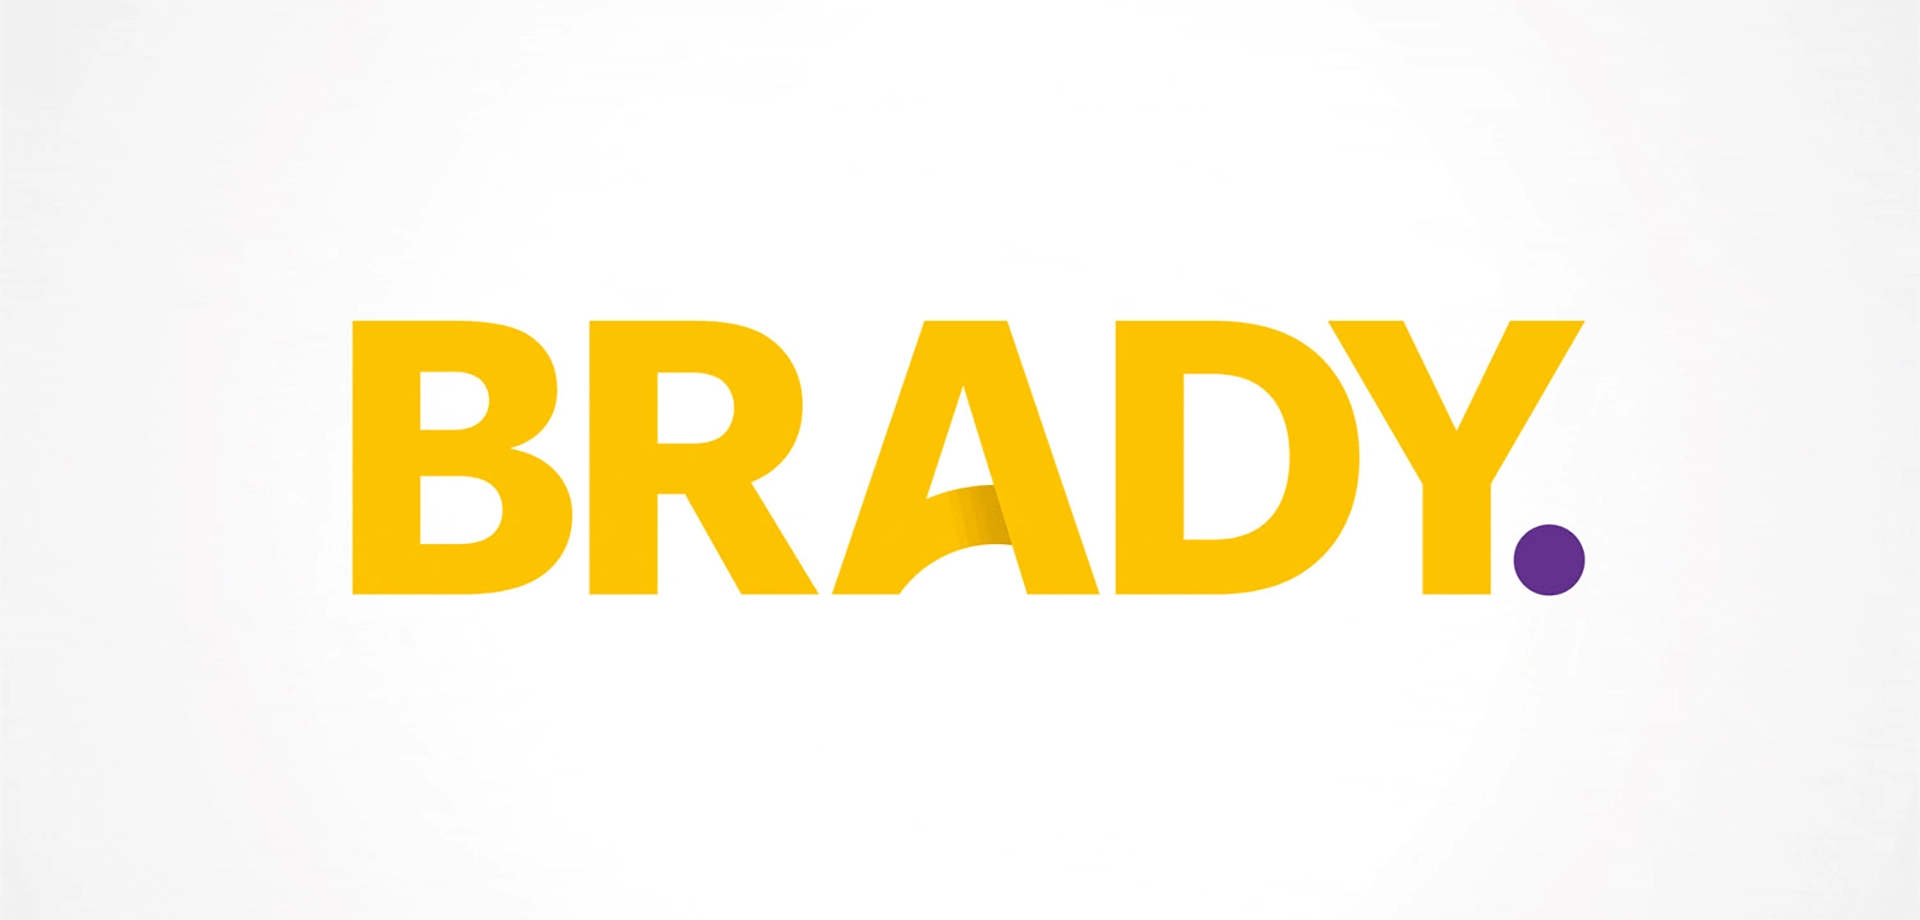 Brady new logo design